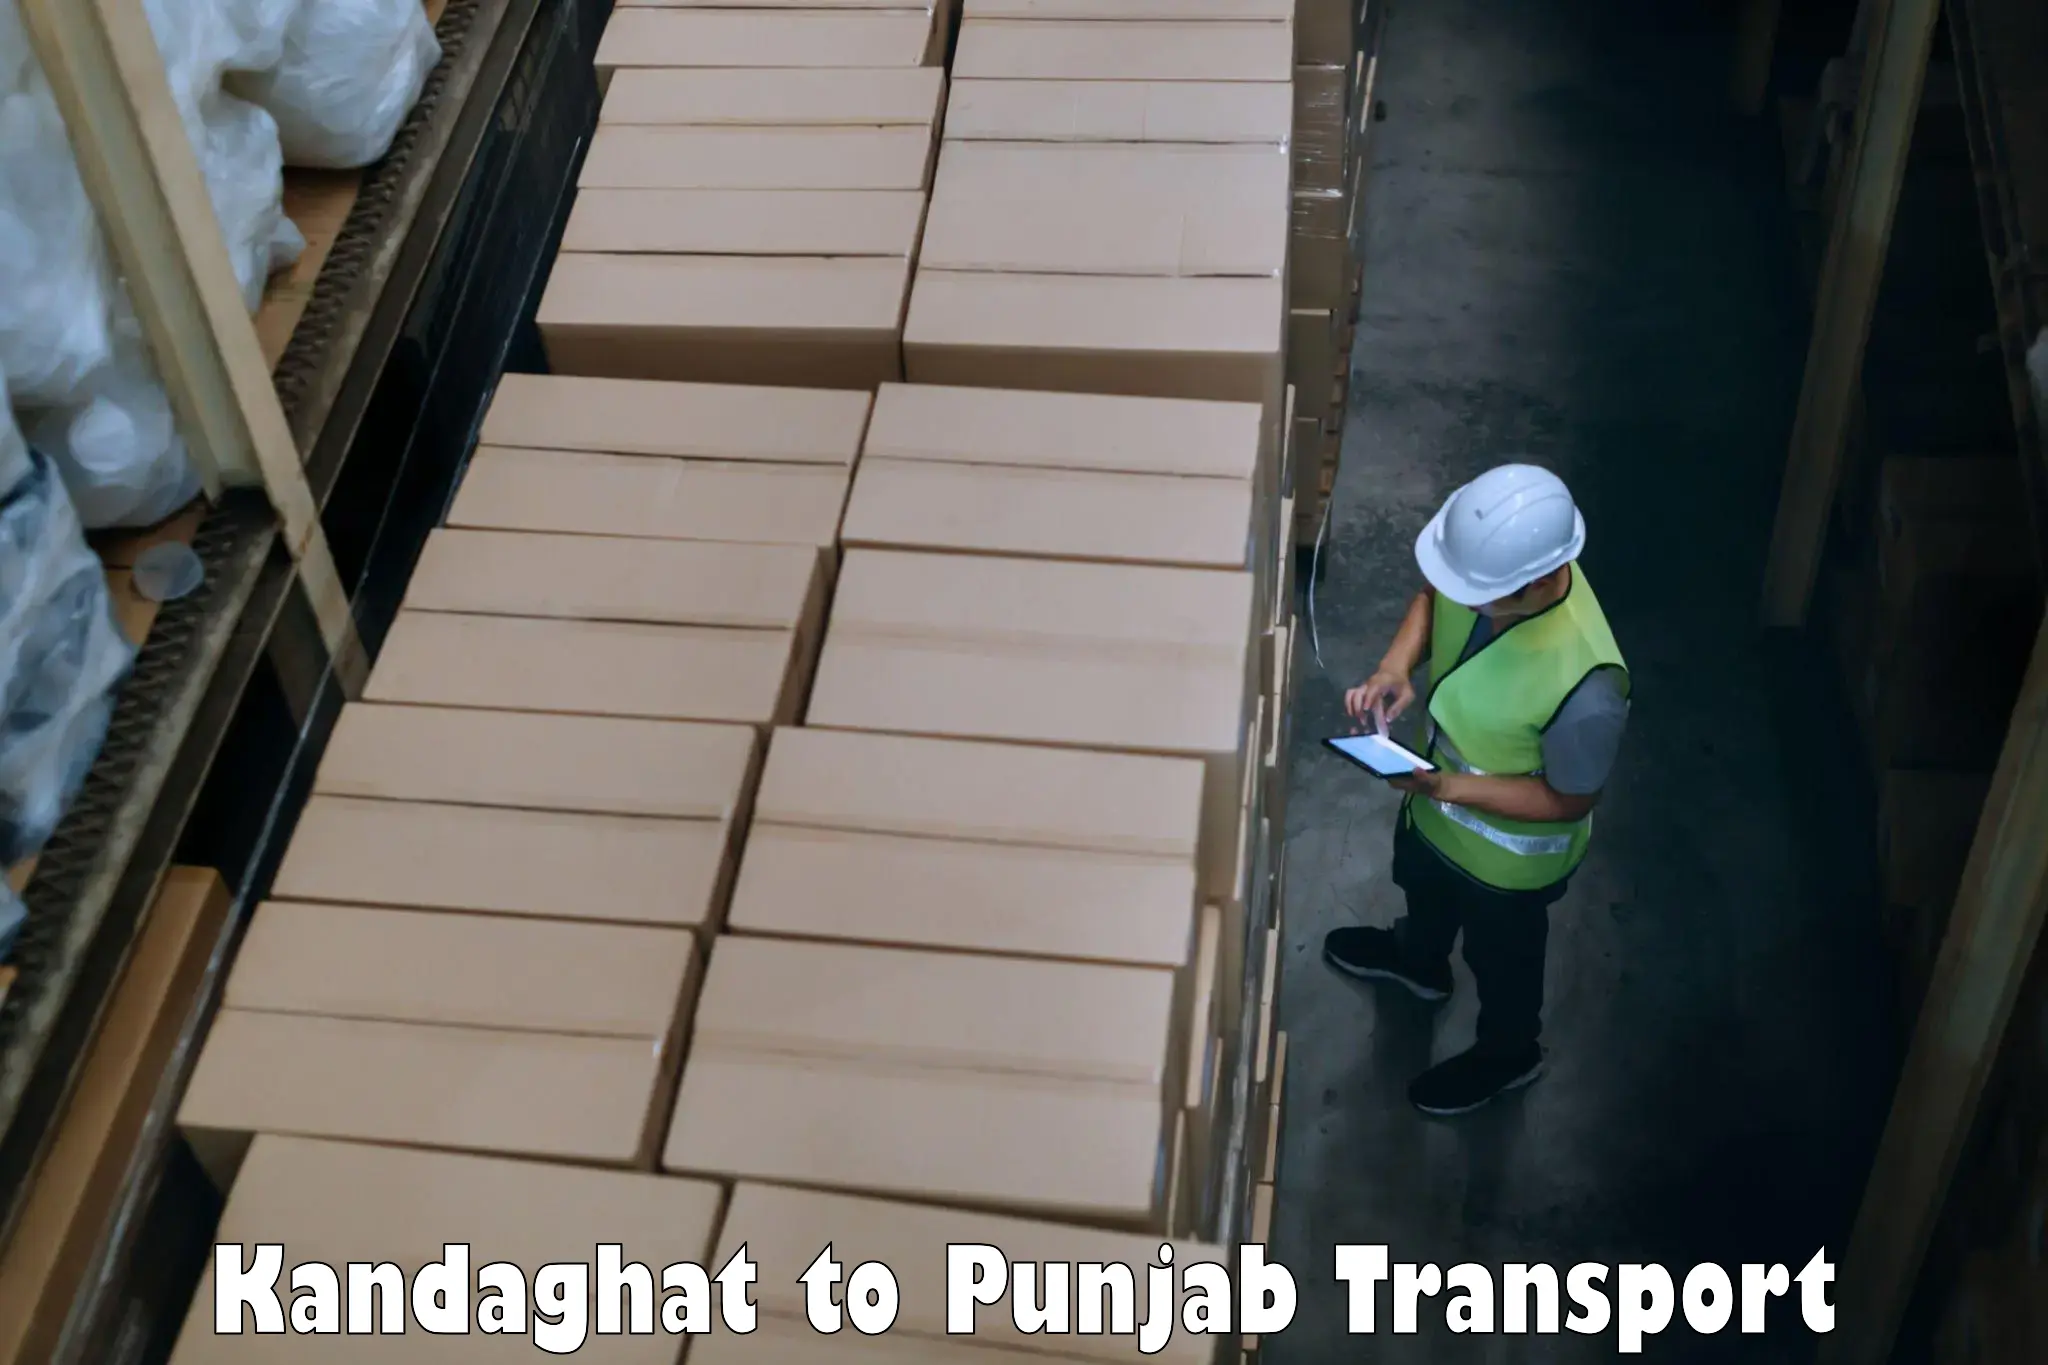 Express transport services Kandaghat to Jalandhar